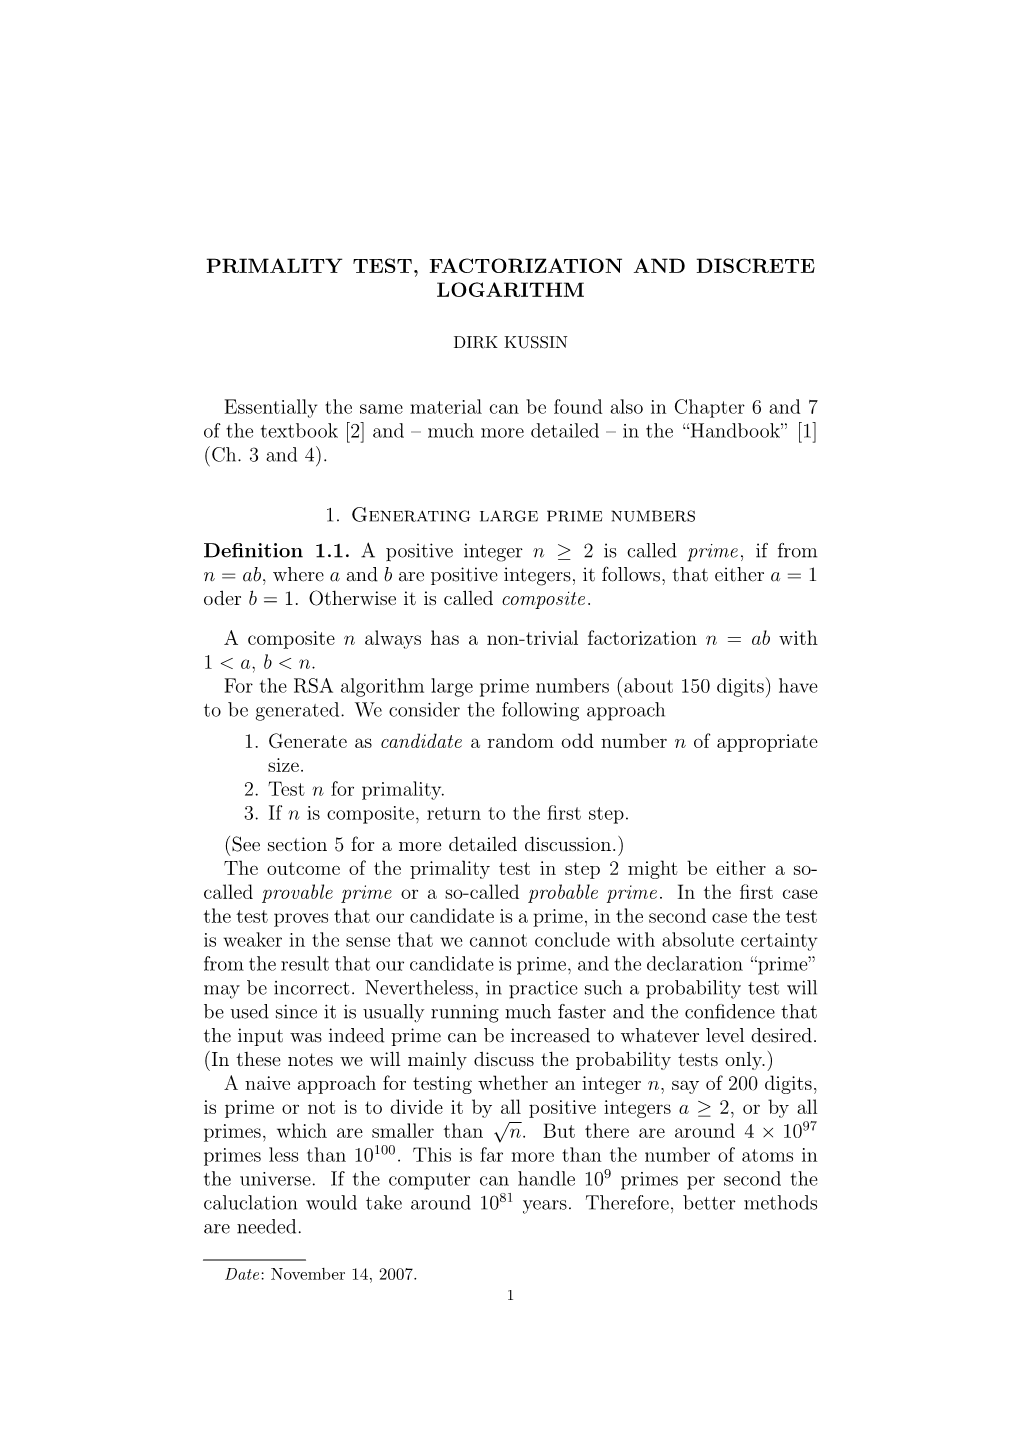 Primality Test, Factorization and Discrete Logarithm